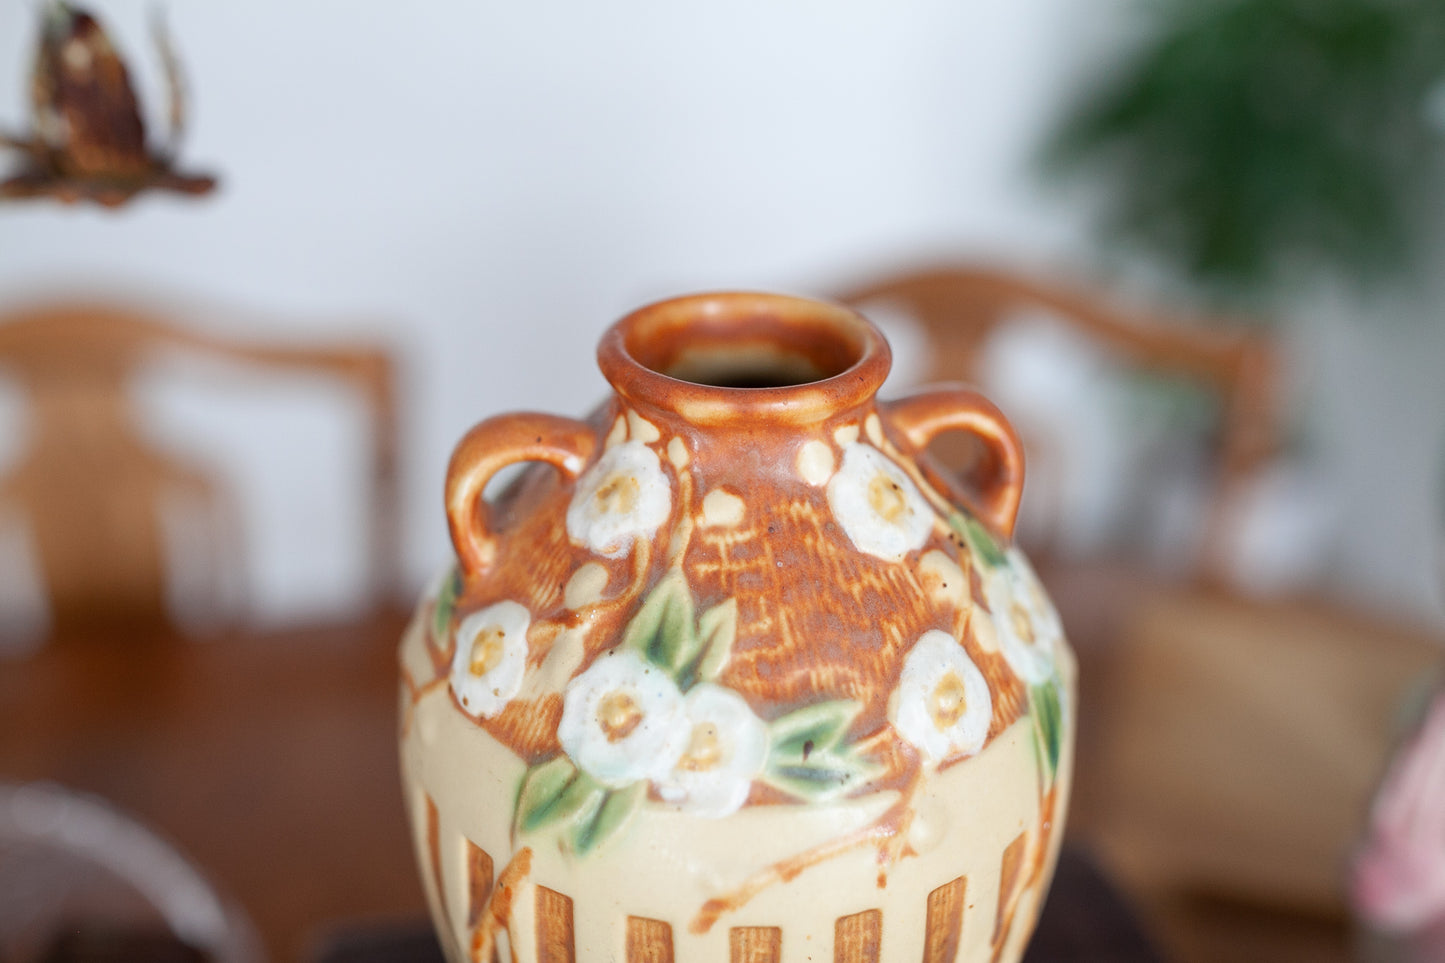 Roseville Pottery Cherry Blossom Vase, Shape 622-7, Brown